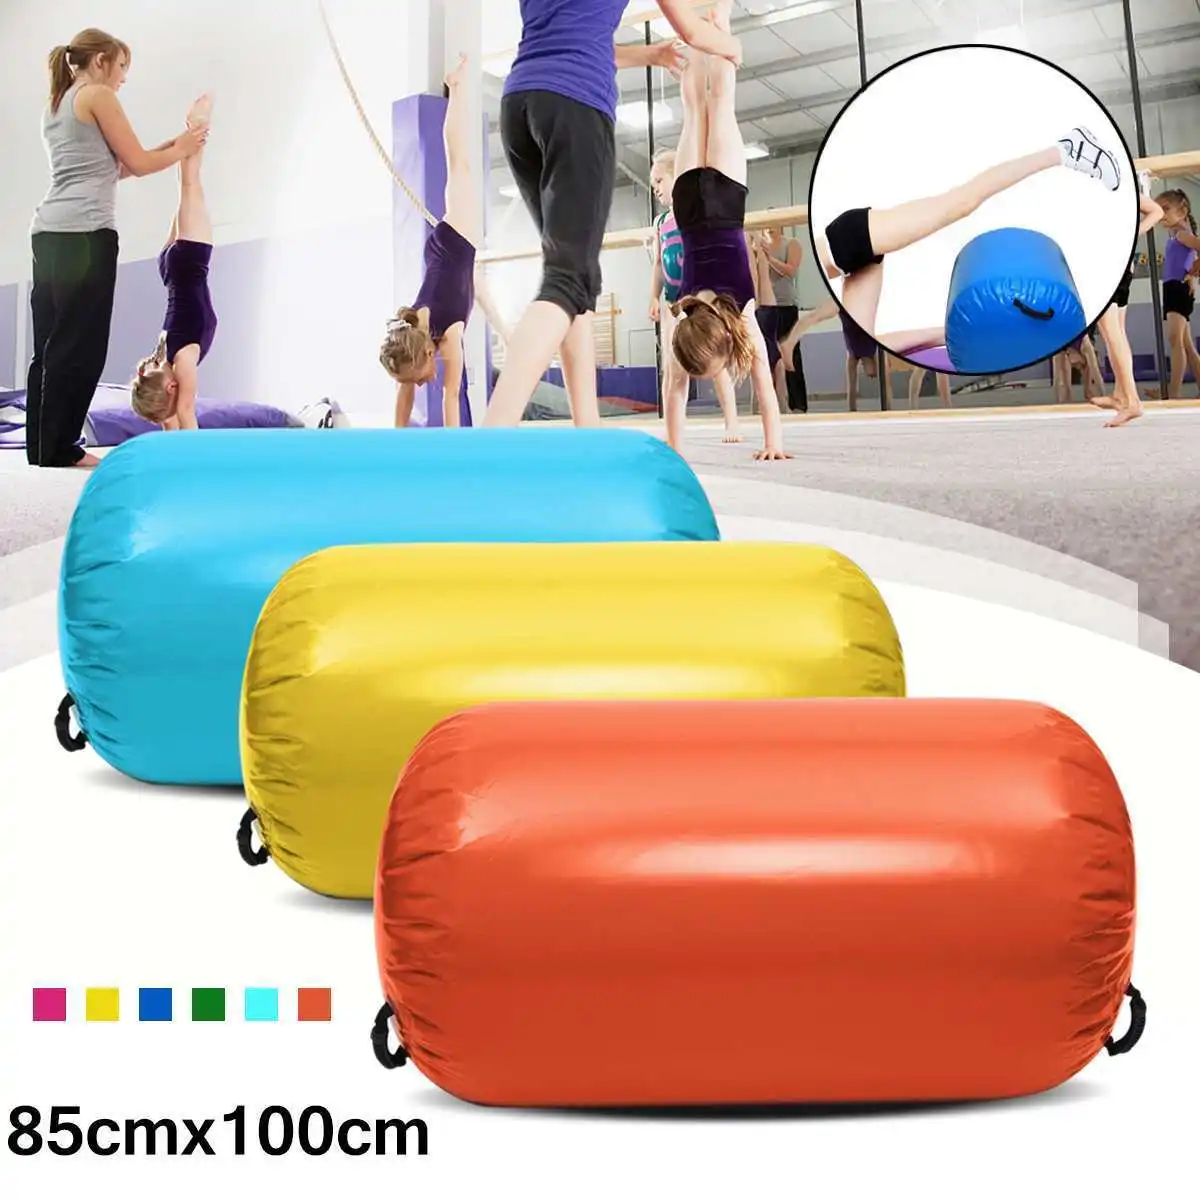 Надувной воздушный коврик 85x100 см для гимнастики пола дома упражнений